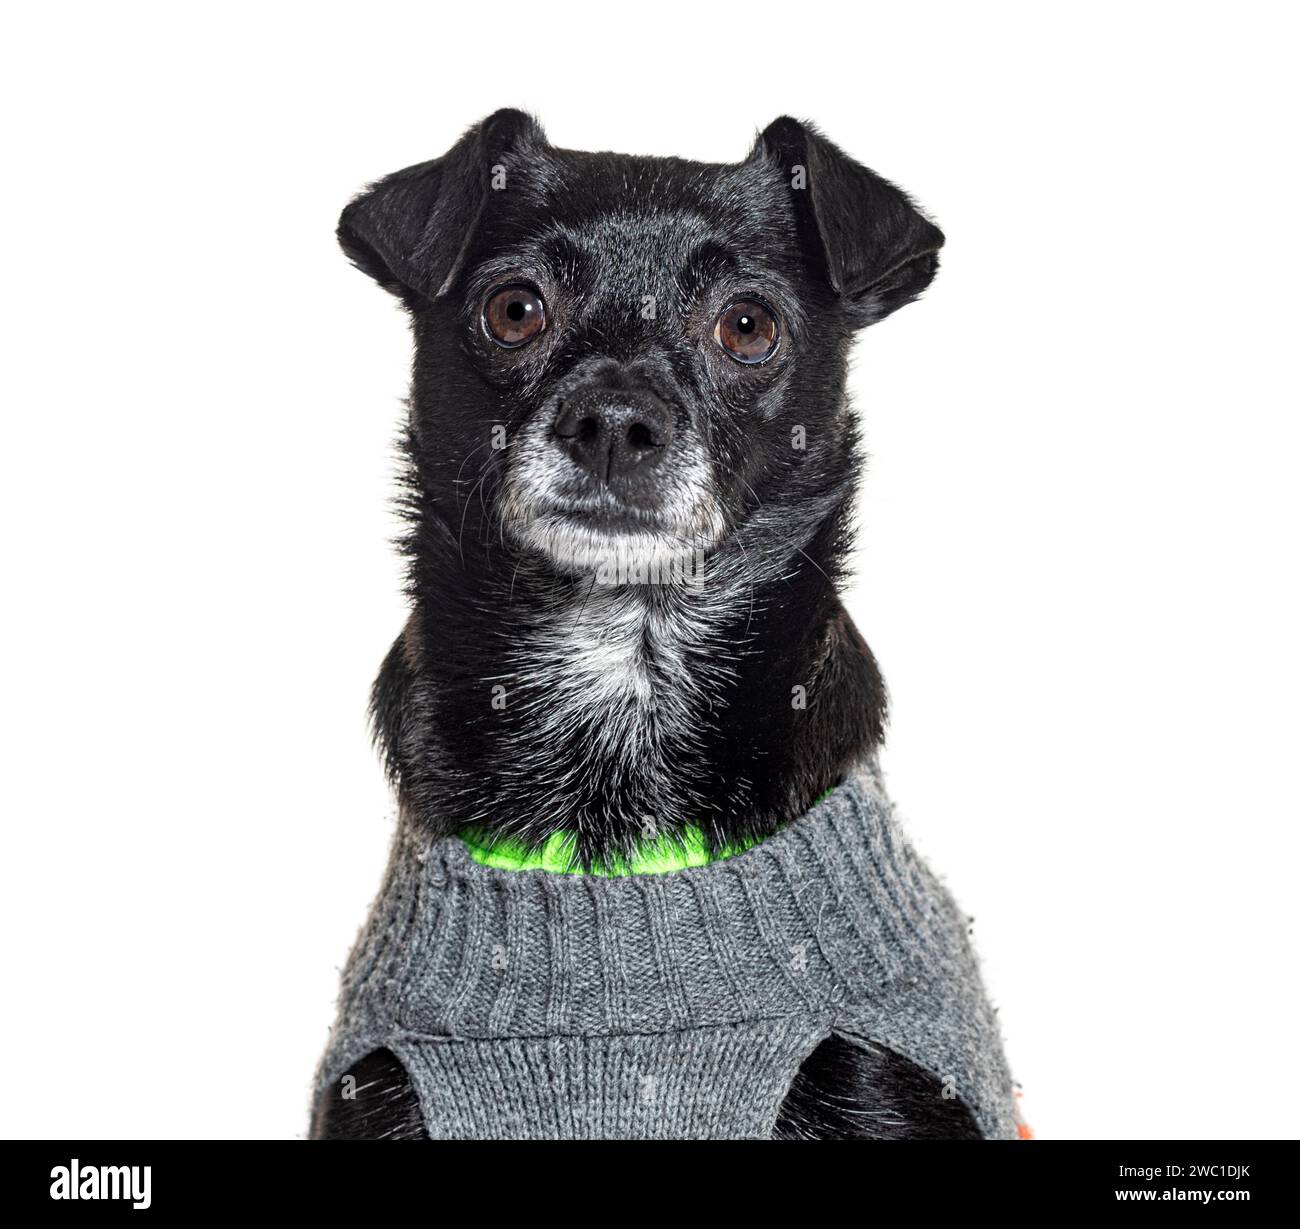 Mongrel chien portant une chemise en laine grise et verte pour animaux de compagnie, isolé sur blanc Banque D'Images